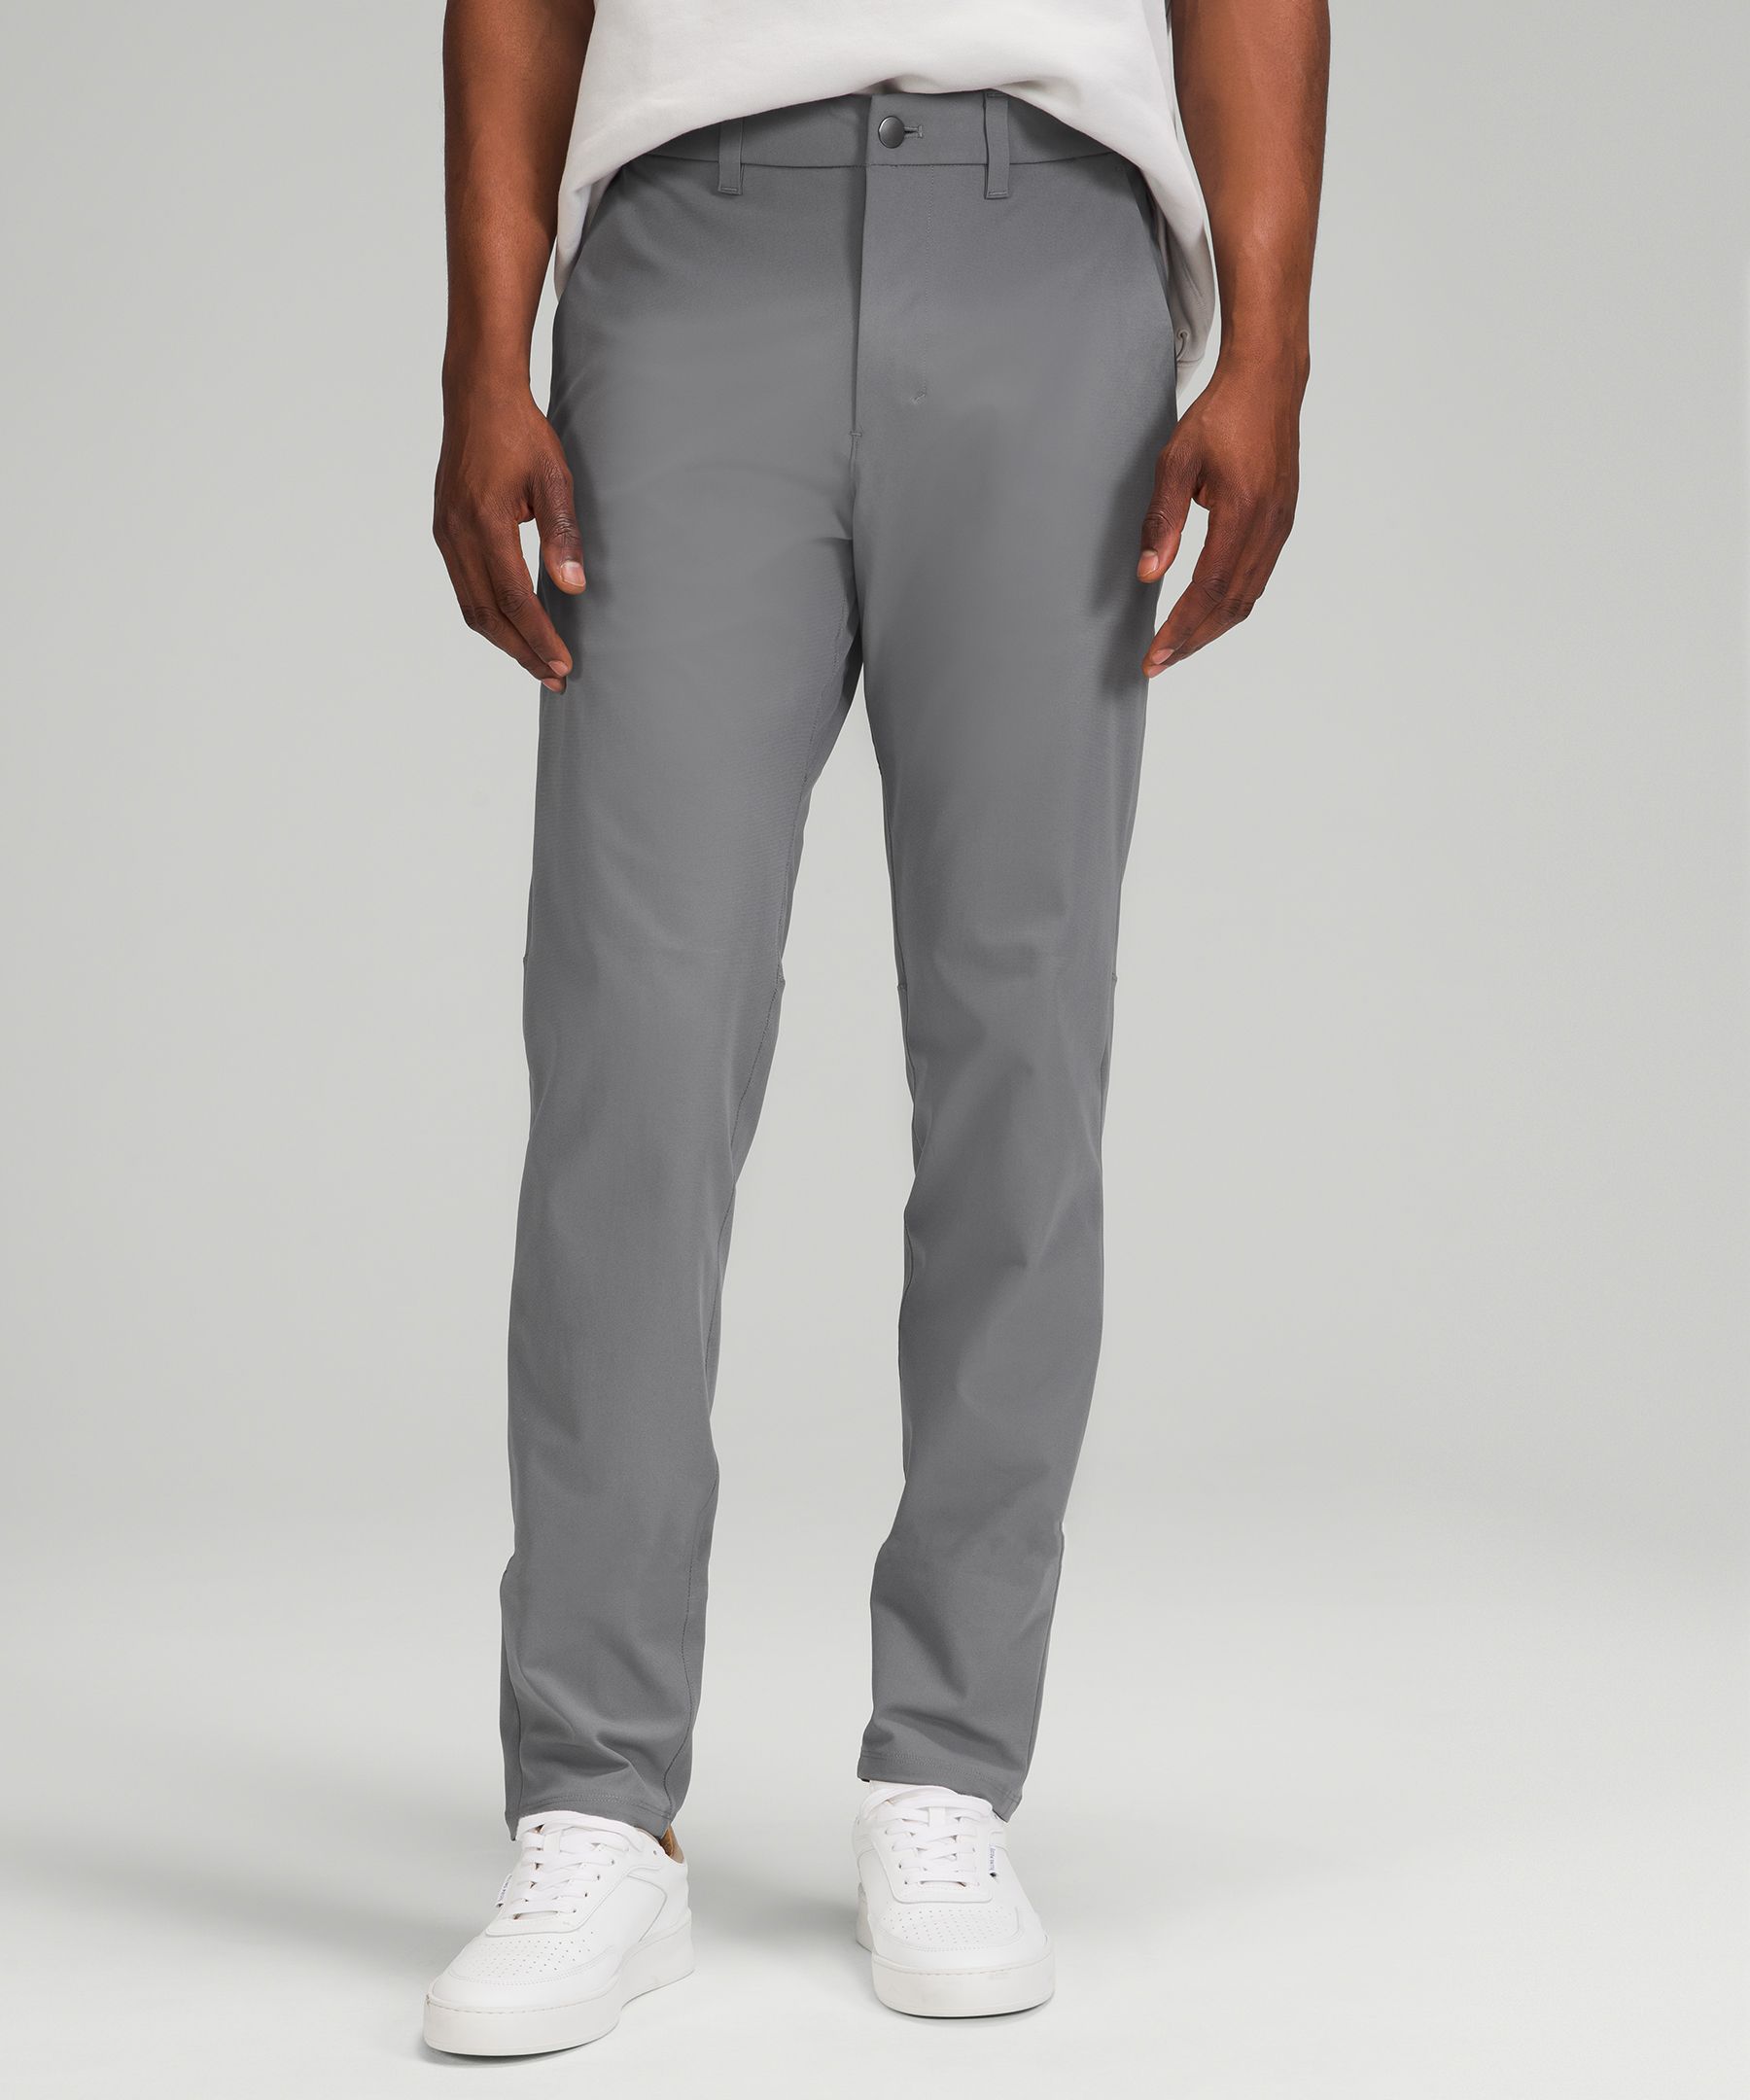 Lululemon Commission Slim-fit Pants 37" Warpstreme In Asphalt Grey